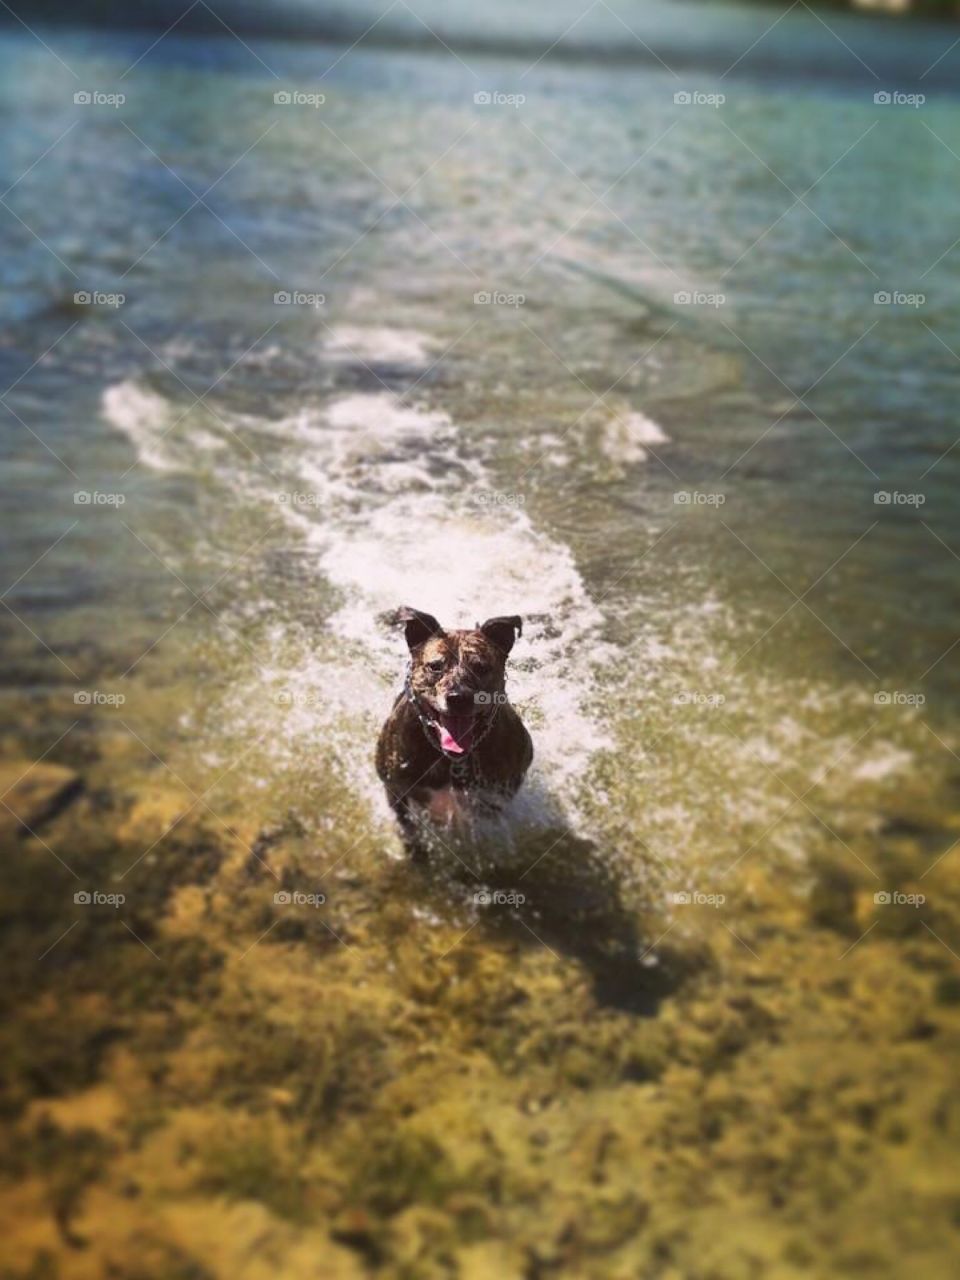 Pretty Pitty Layla!
#PitBull #LakeLife 